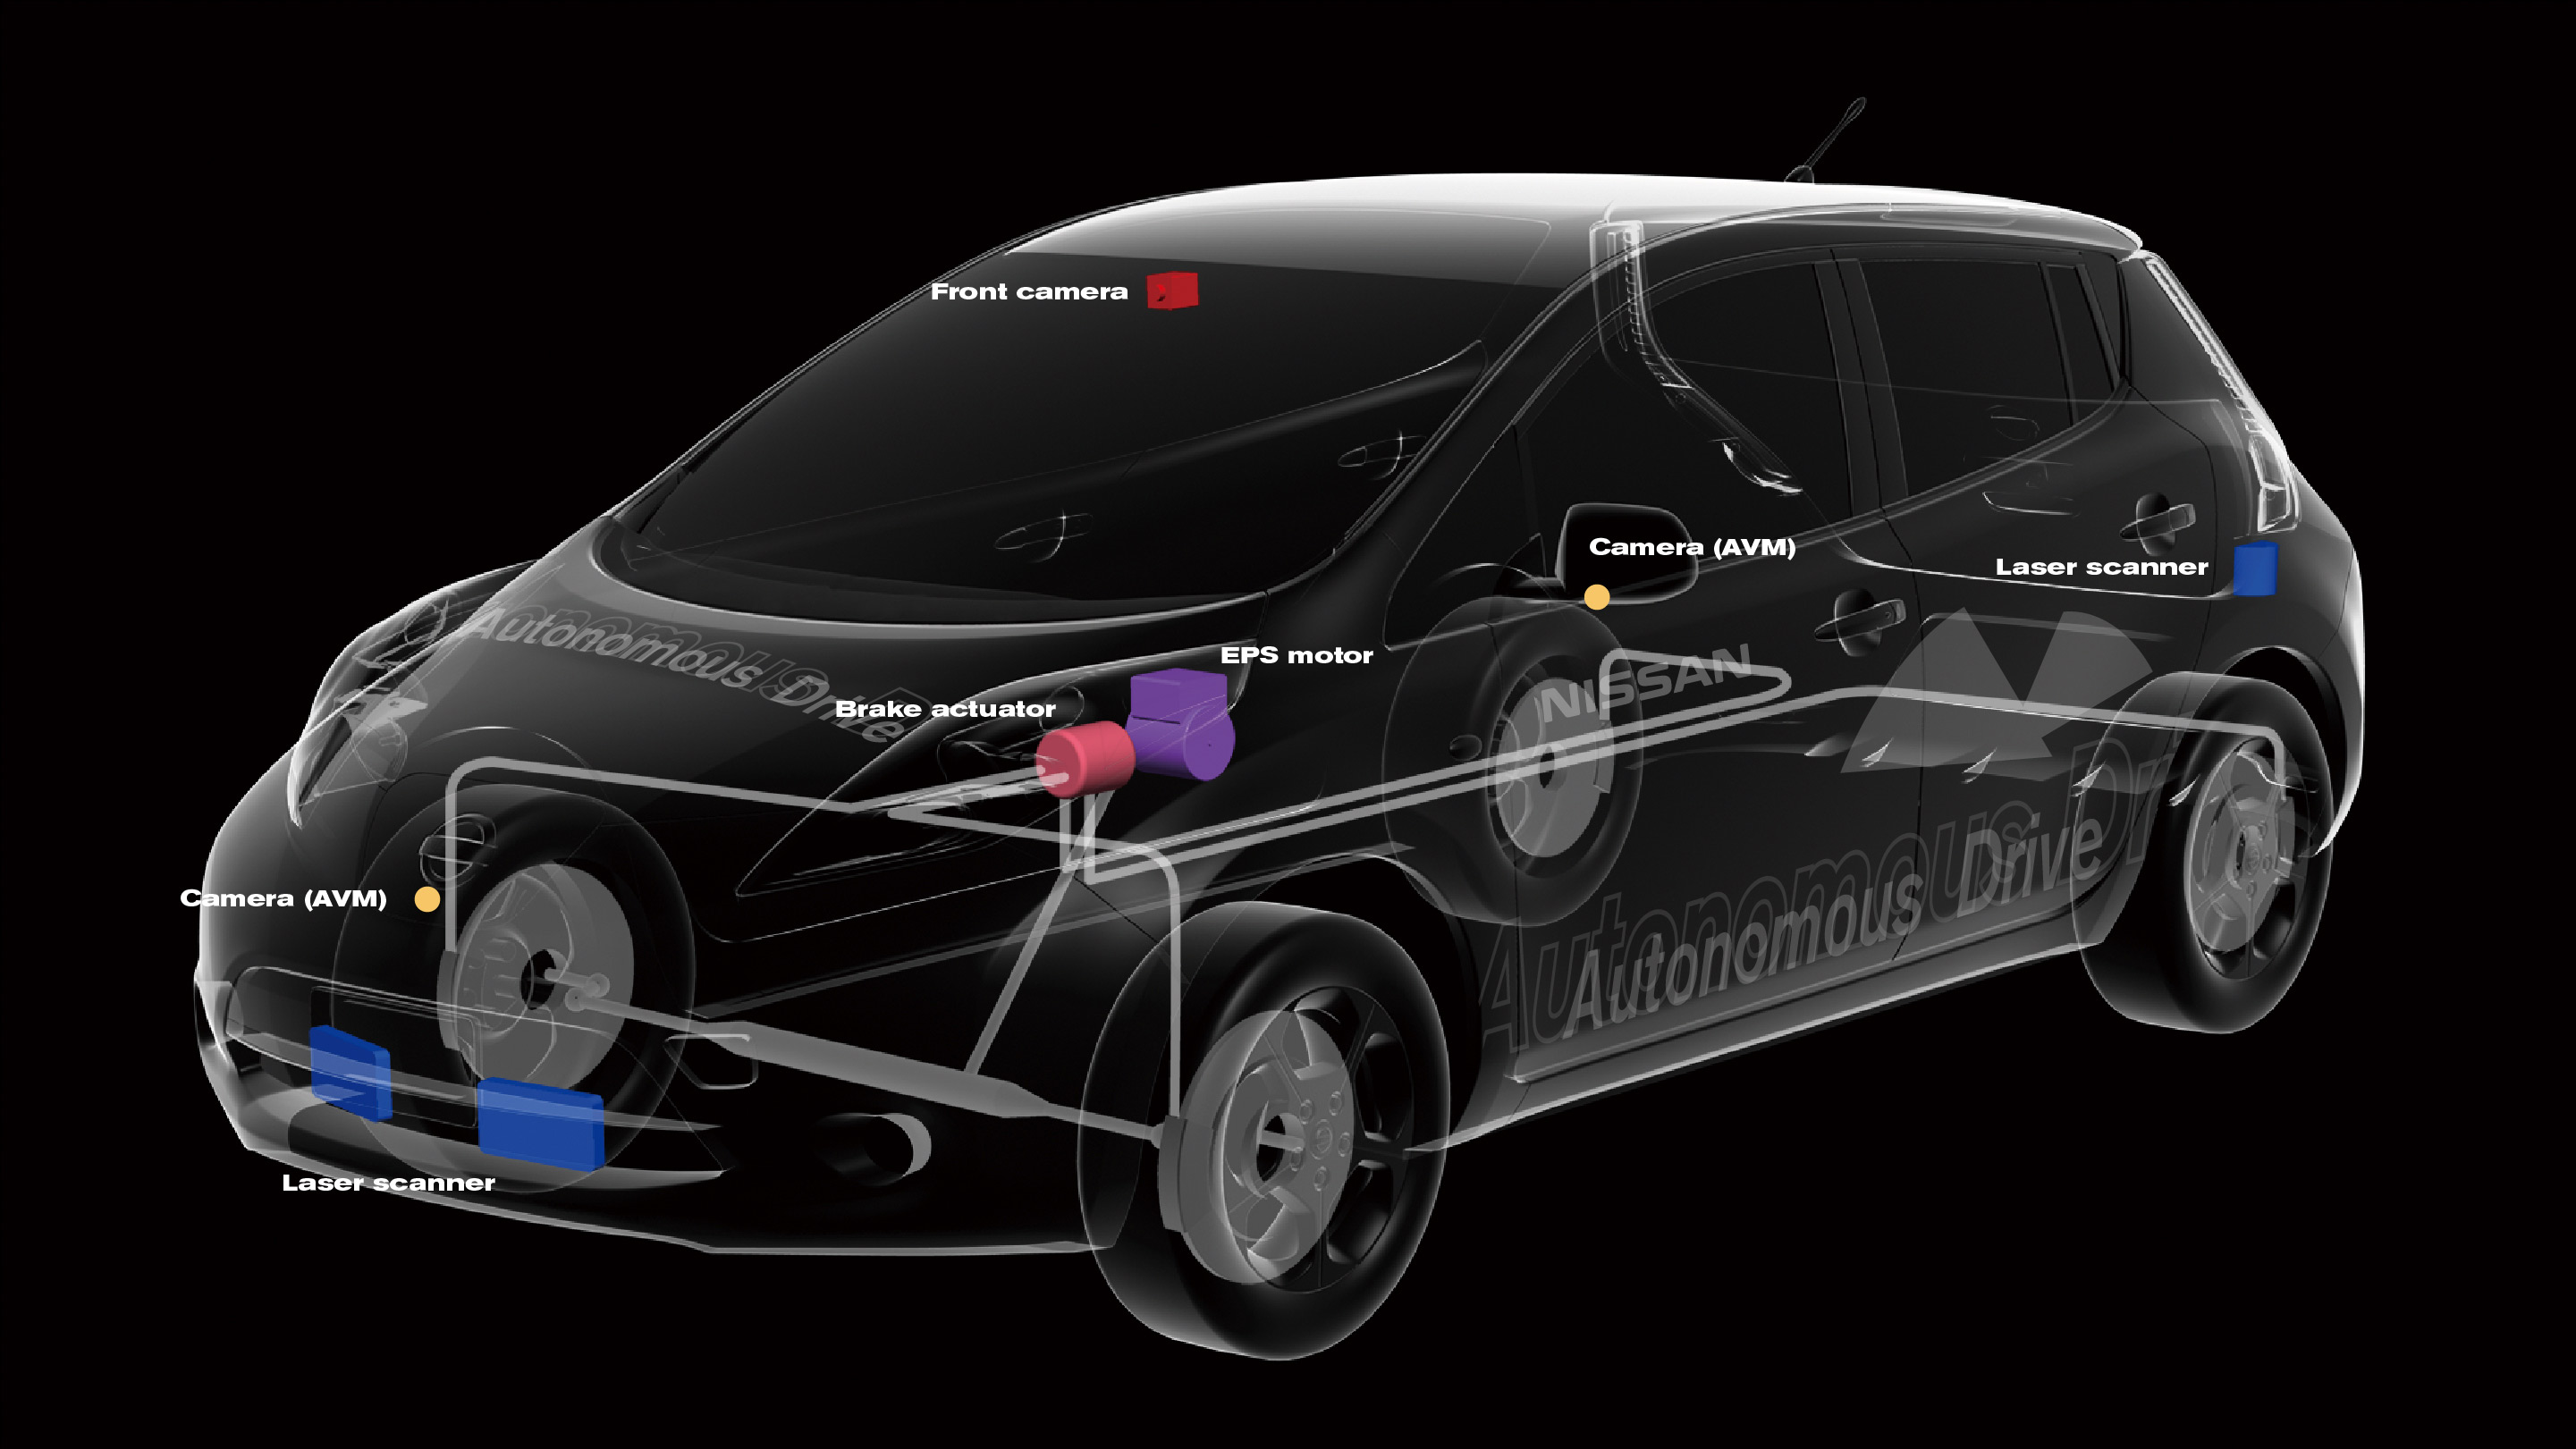 Nissan Leaf autonomous car technologies